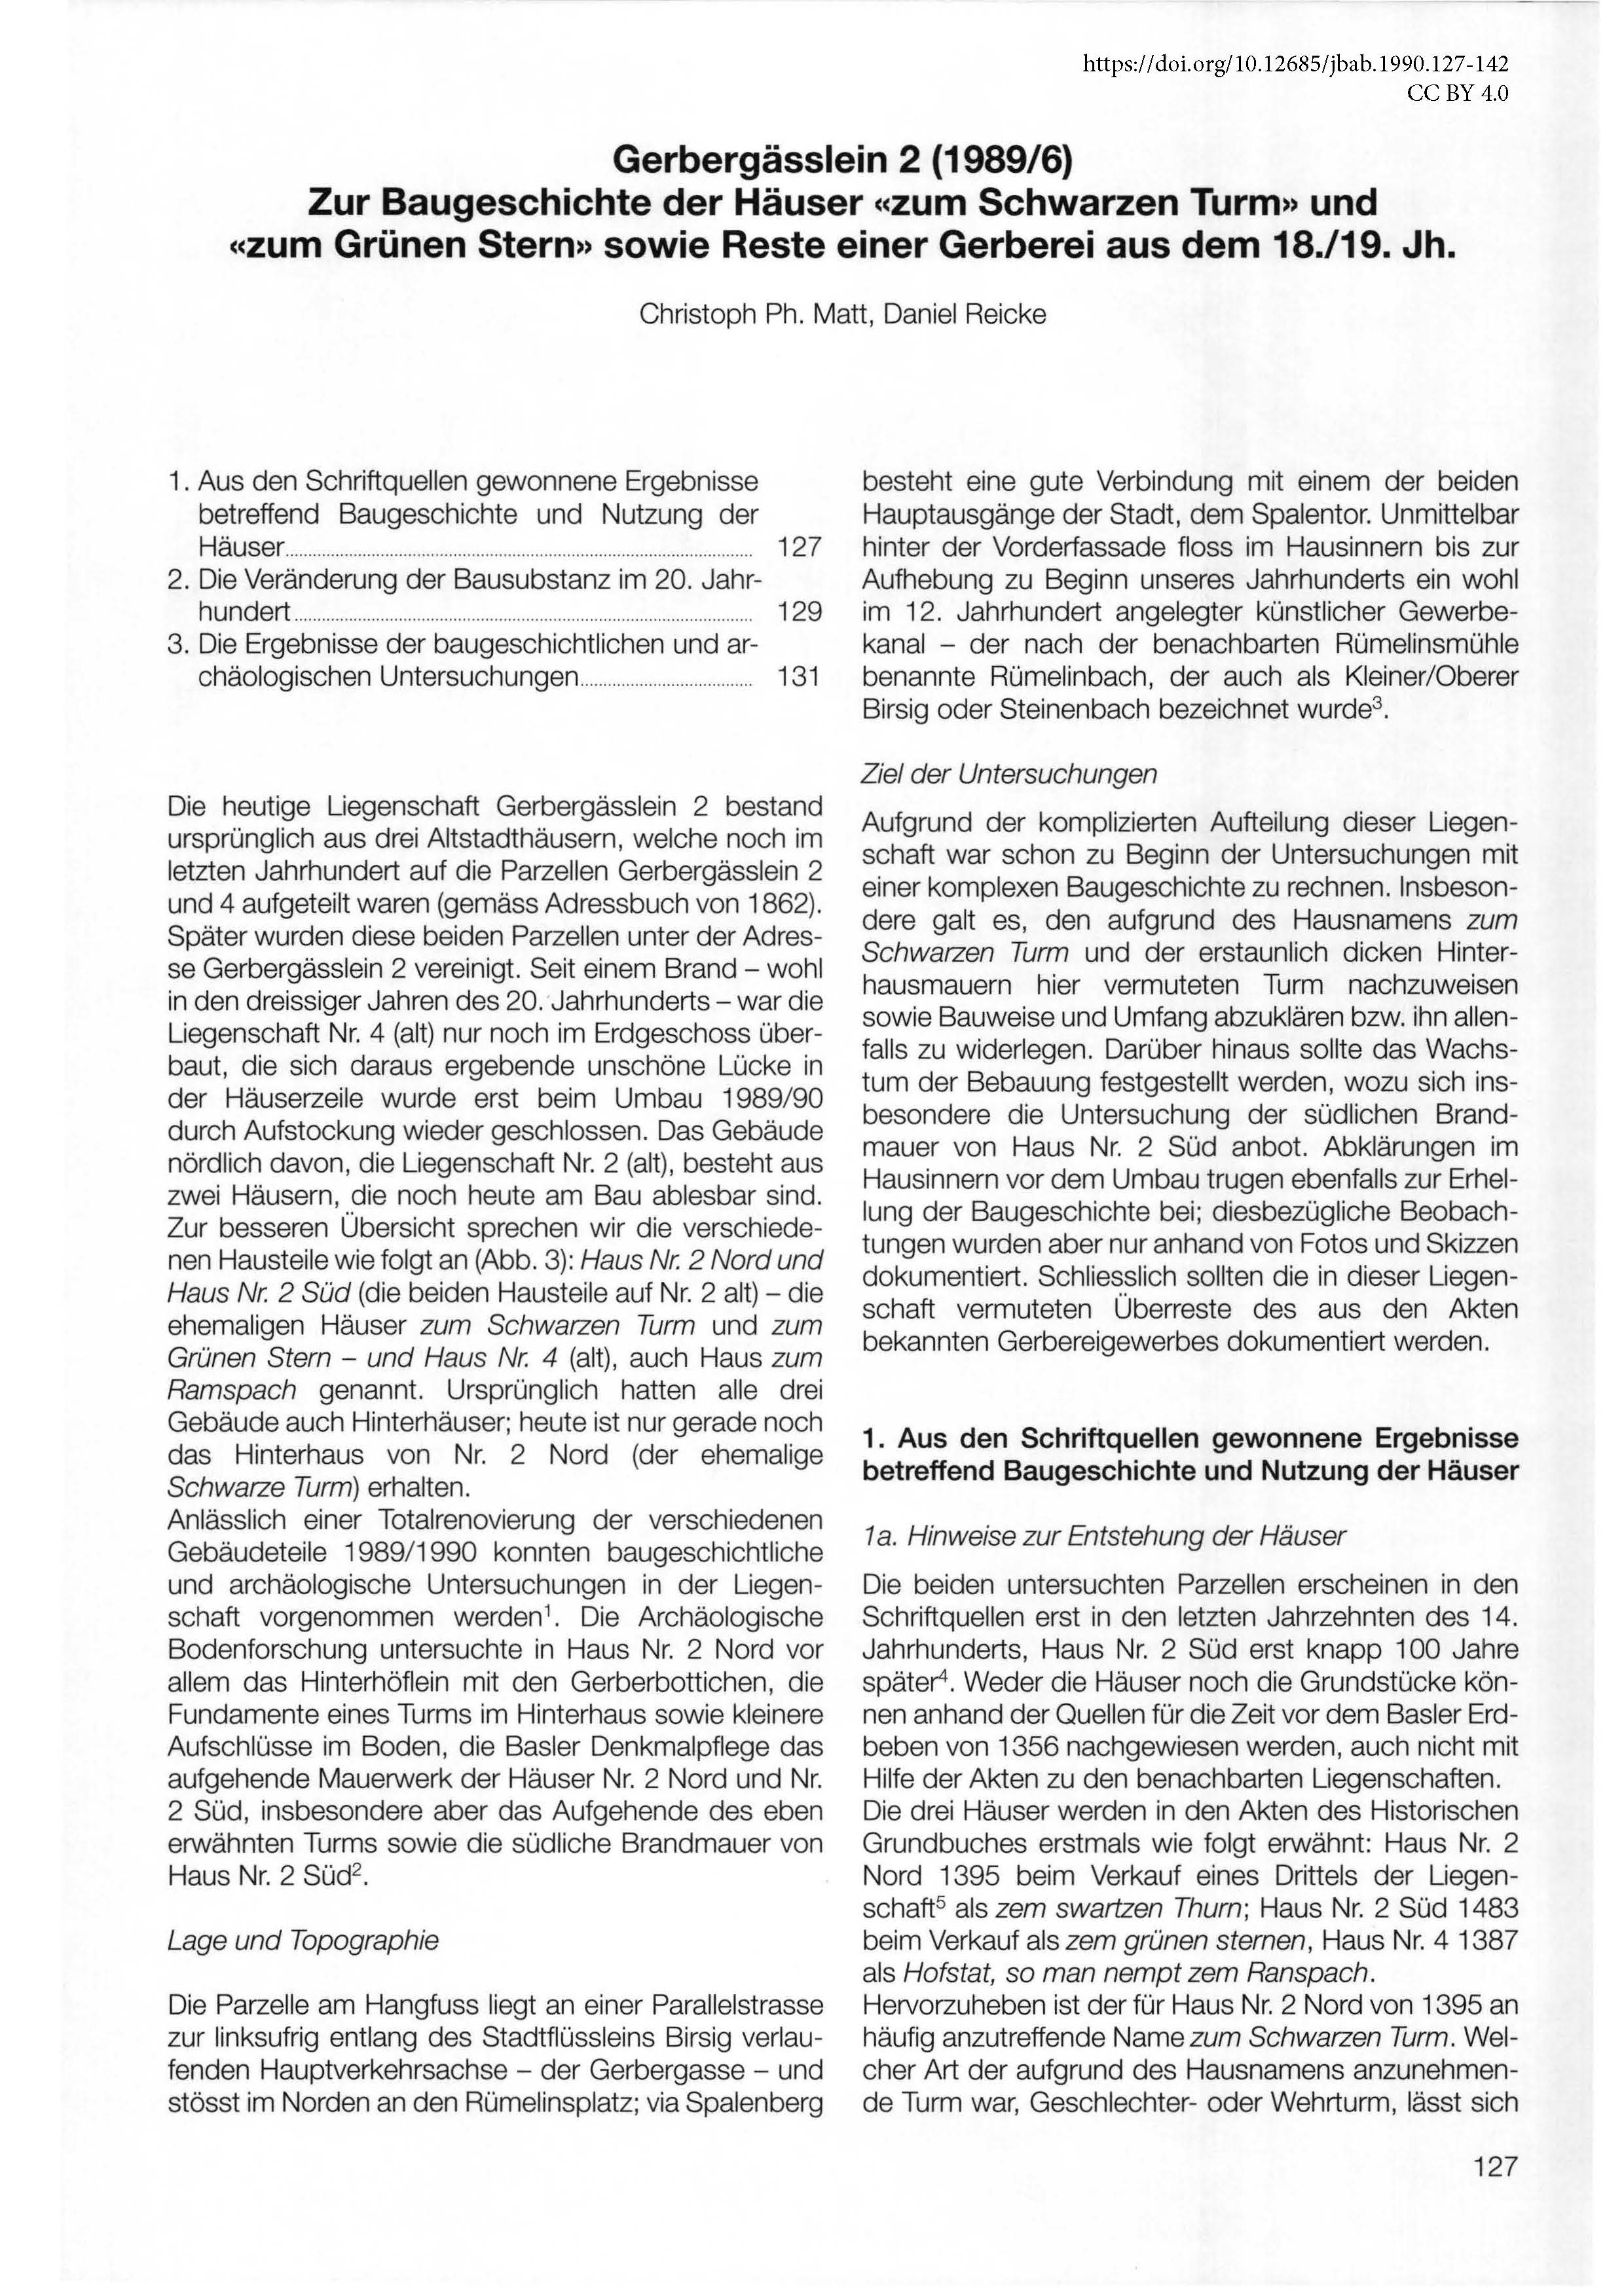 Erste Seite des Artikels über die Untersuchungen in der Liegenschaft Gerbergässlein 2